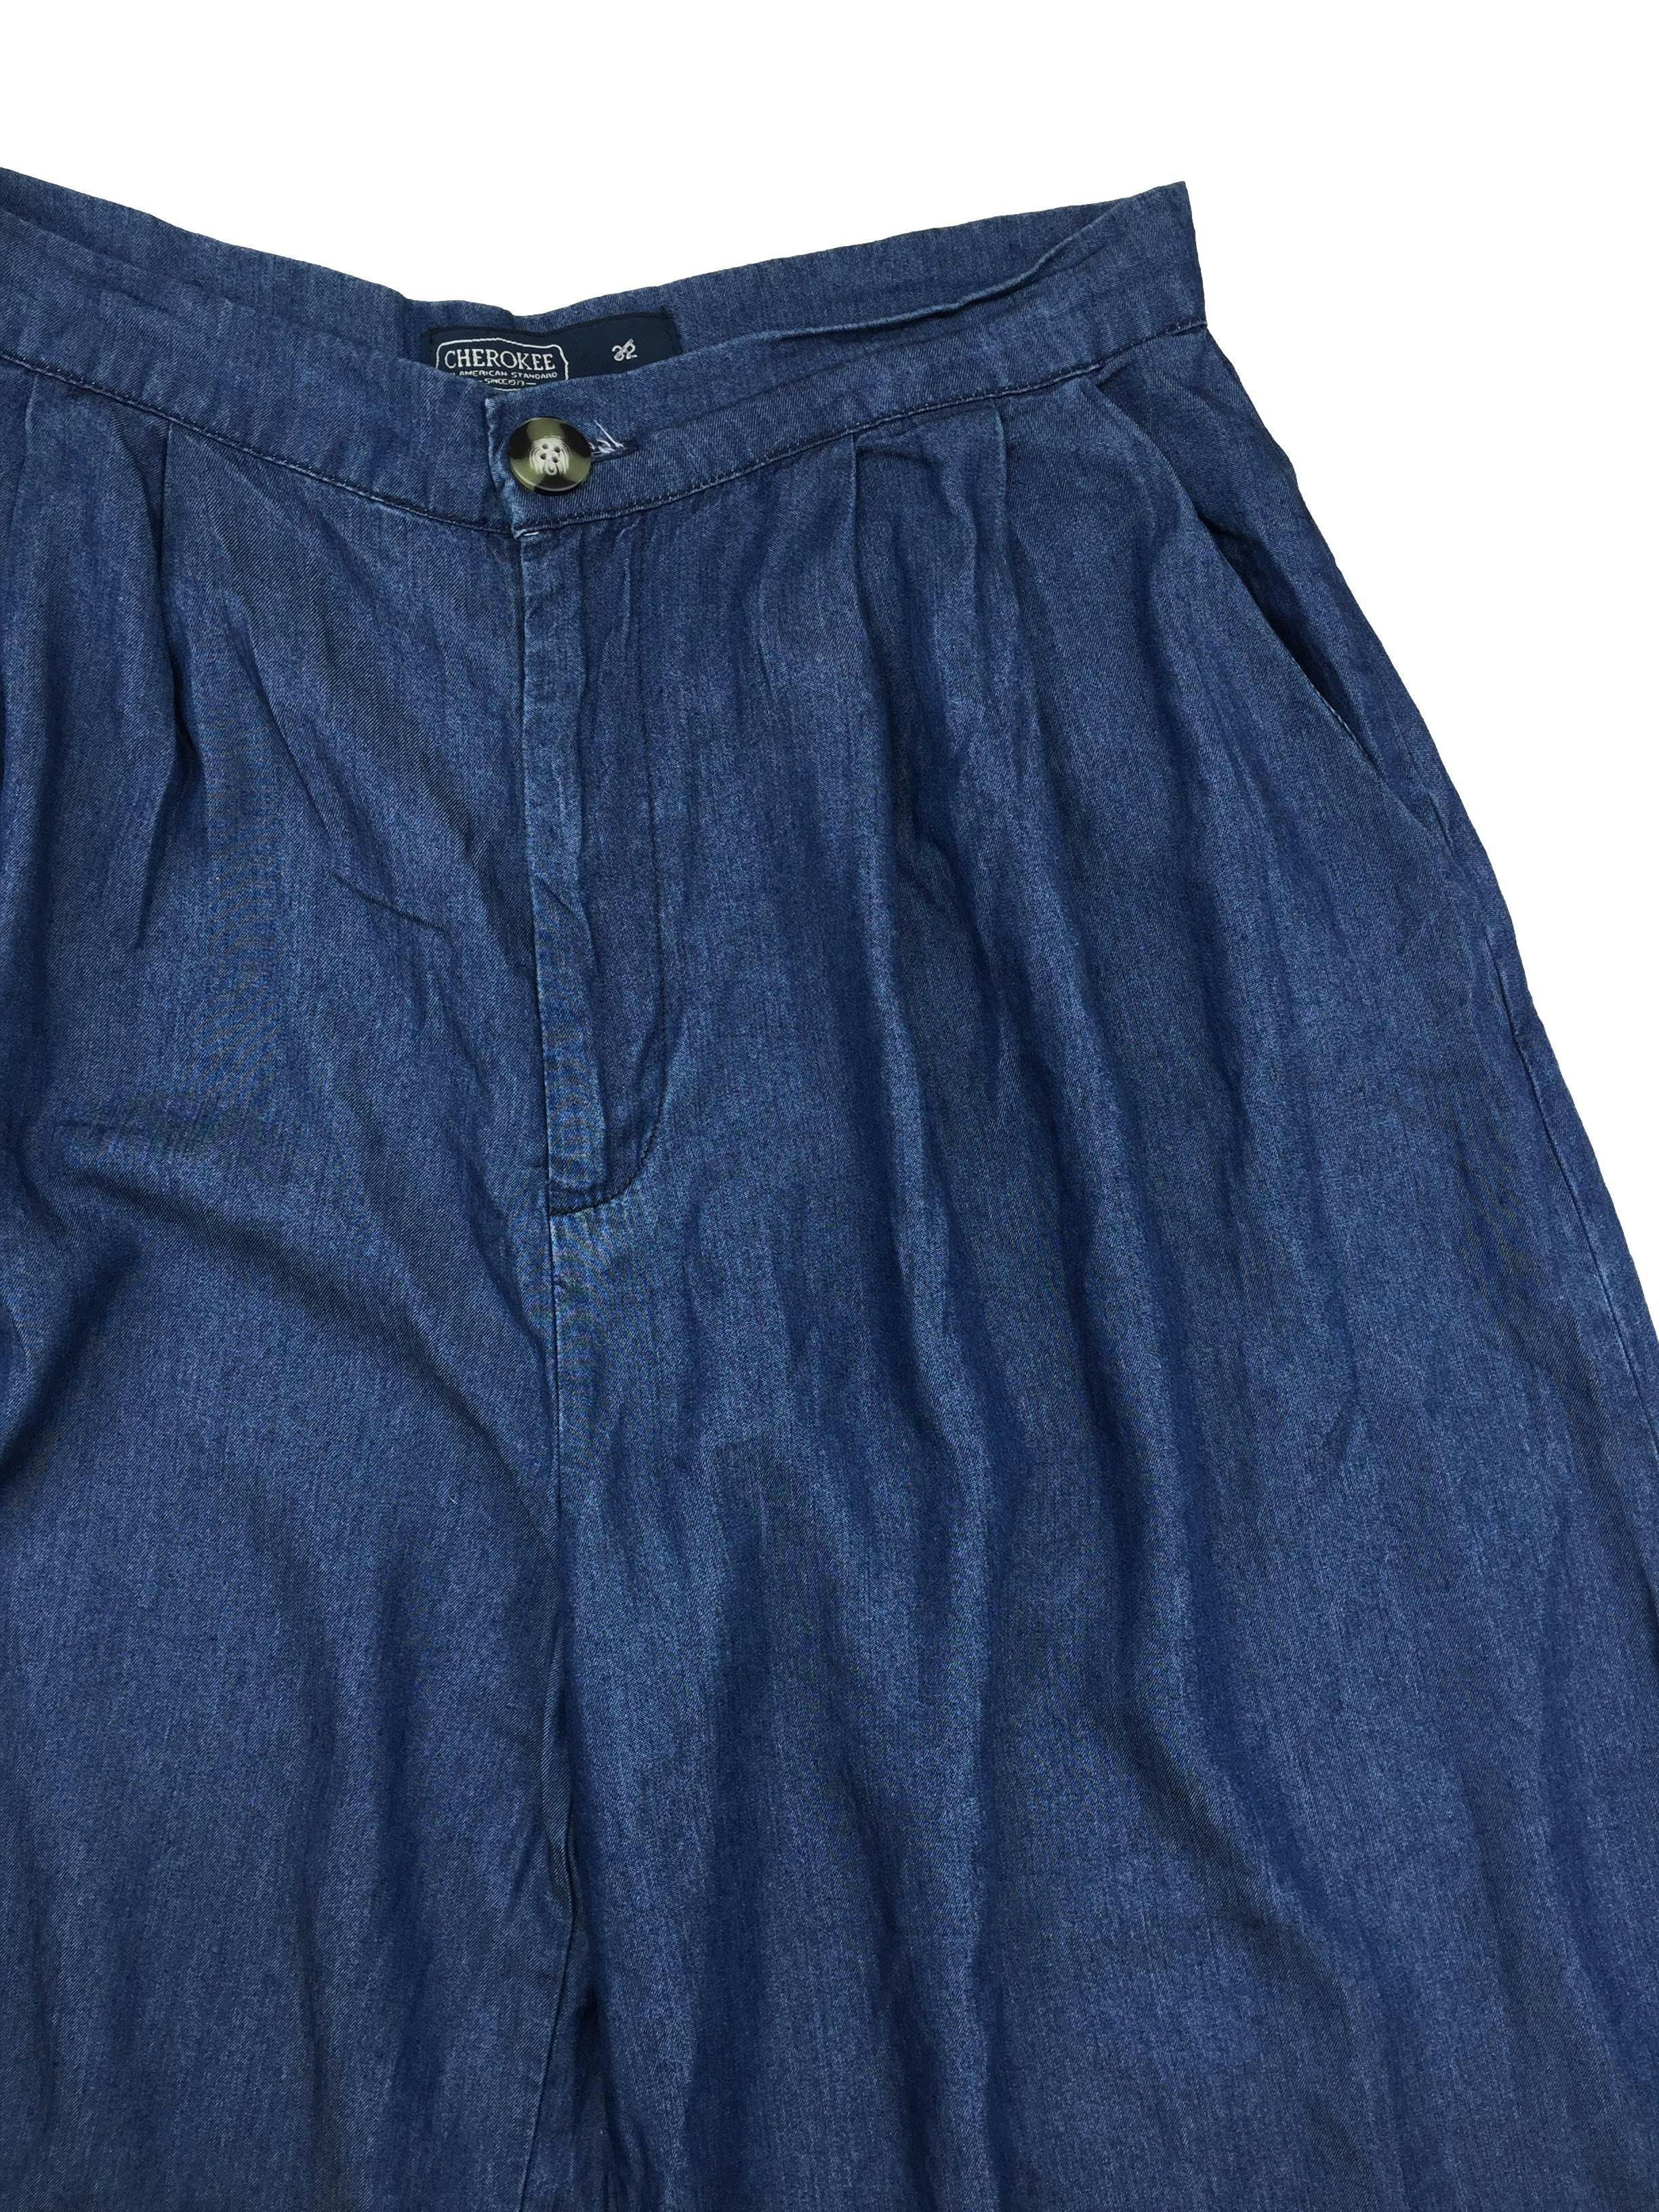 Pantalón Cherokee palazo azul, tela fluída. Cintura: 78cm, Tiro: 35cm, Largo: 95cm.